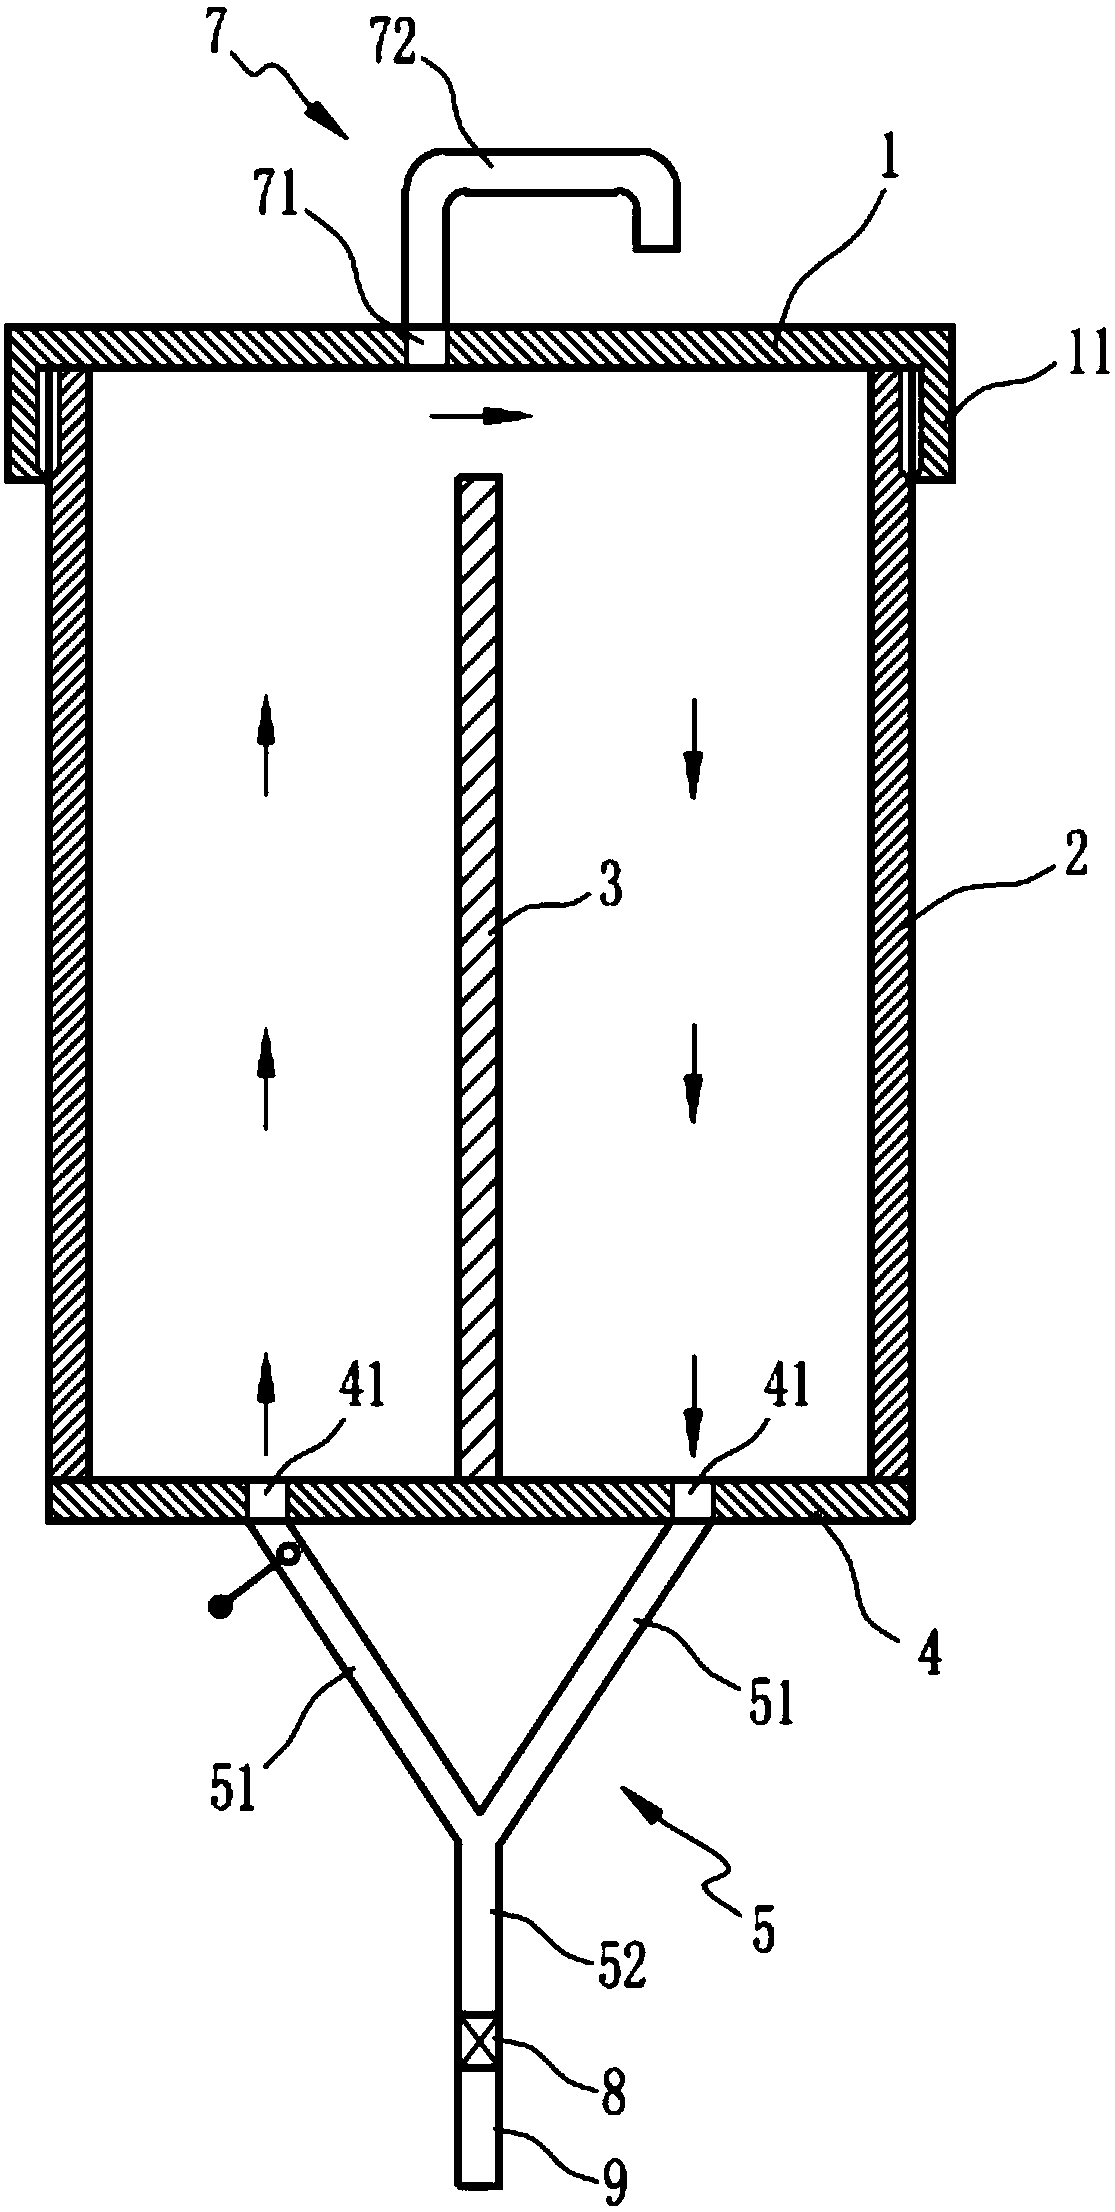 Internal circulation column photoreactor